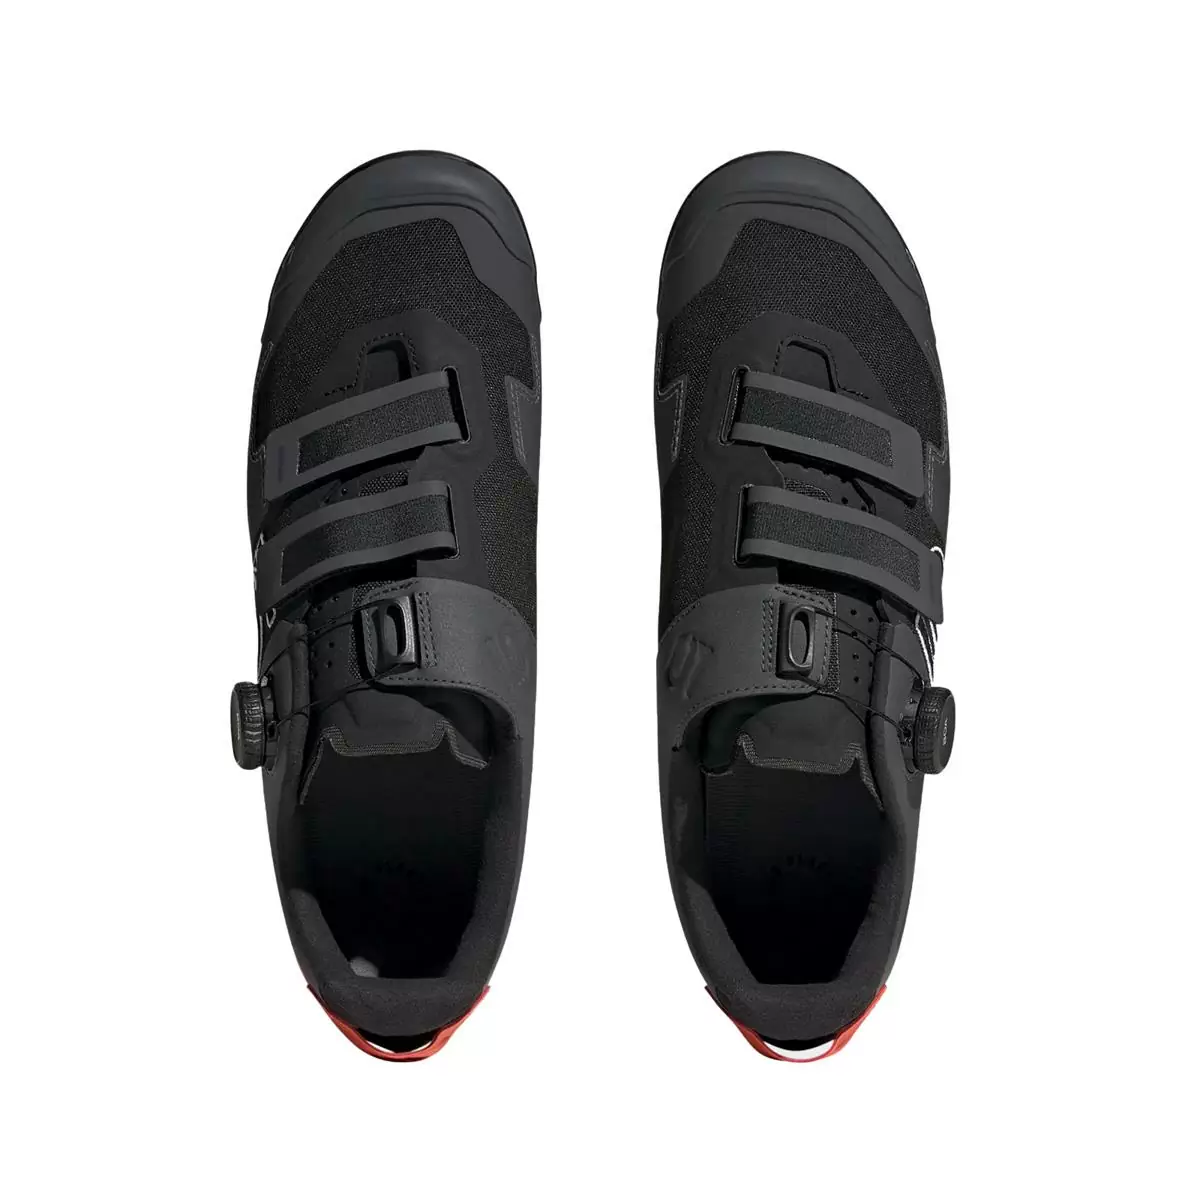 Clip 5.10 Kestrel Boa MTB Shoes Black/Orange Size 42.5 #3